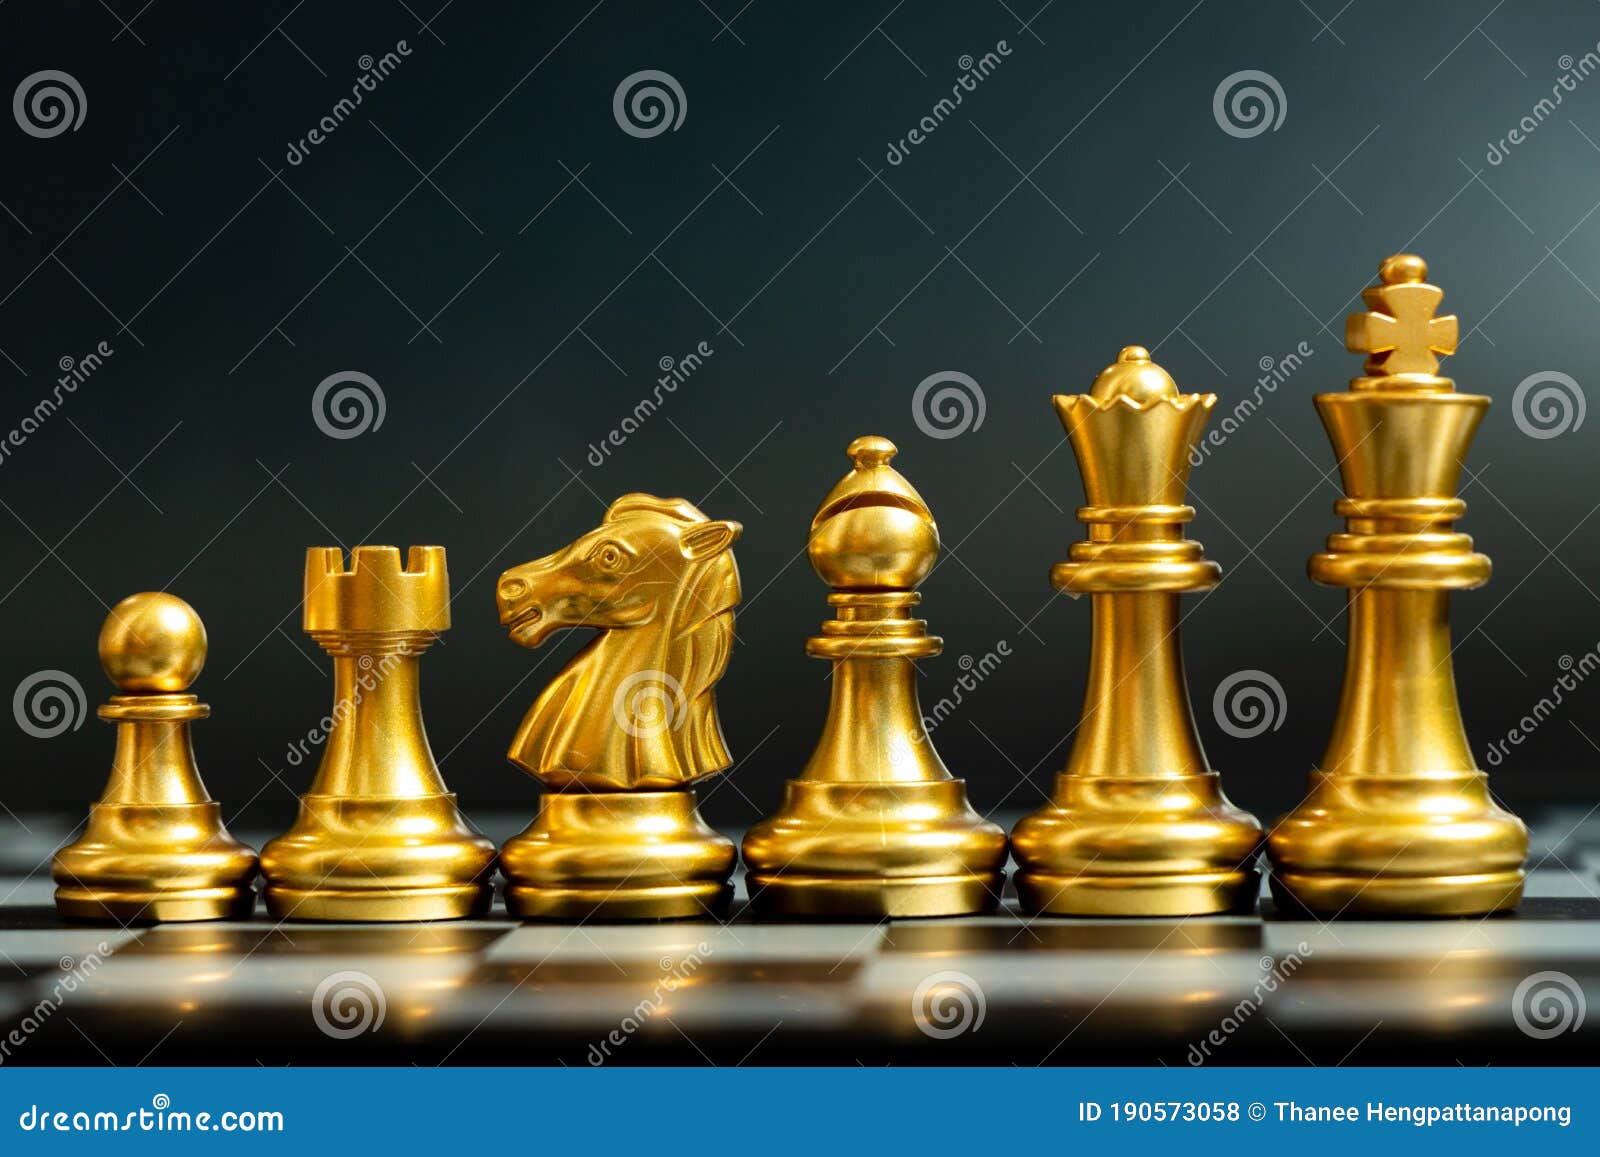 equipe de figuras de xadrez (Rei, Rainha, Bispo, Cavalo, Torre e Peão)  [download] - Designi